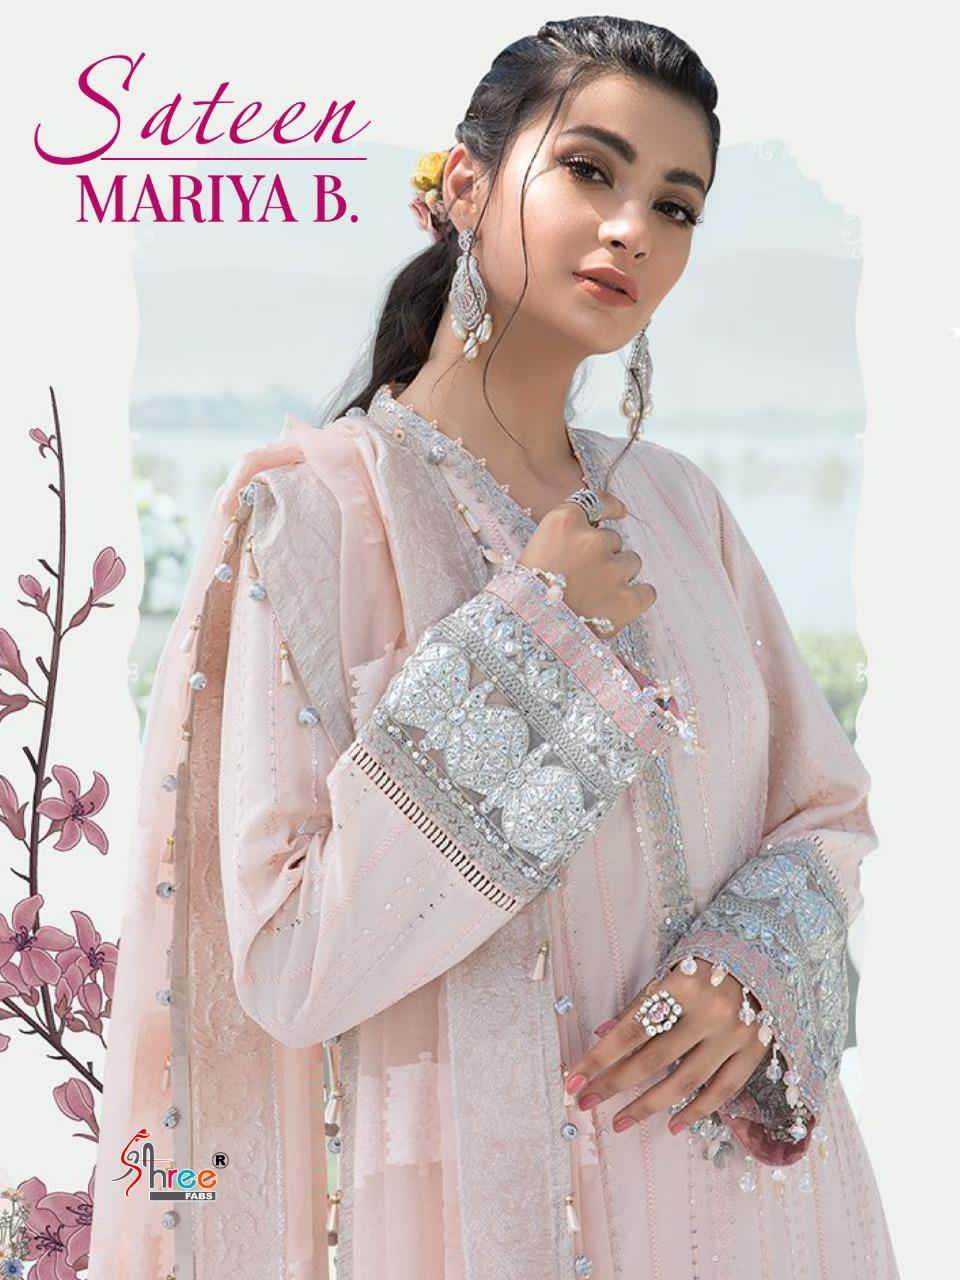 shree fab sateen maria b jam cotton butterfly net dupatta regal look salwar suit catalog